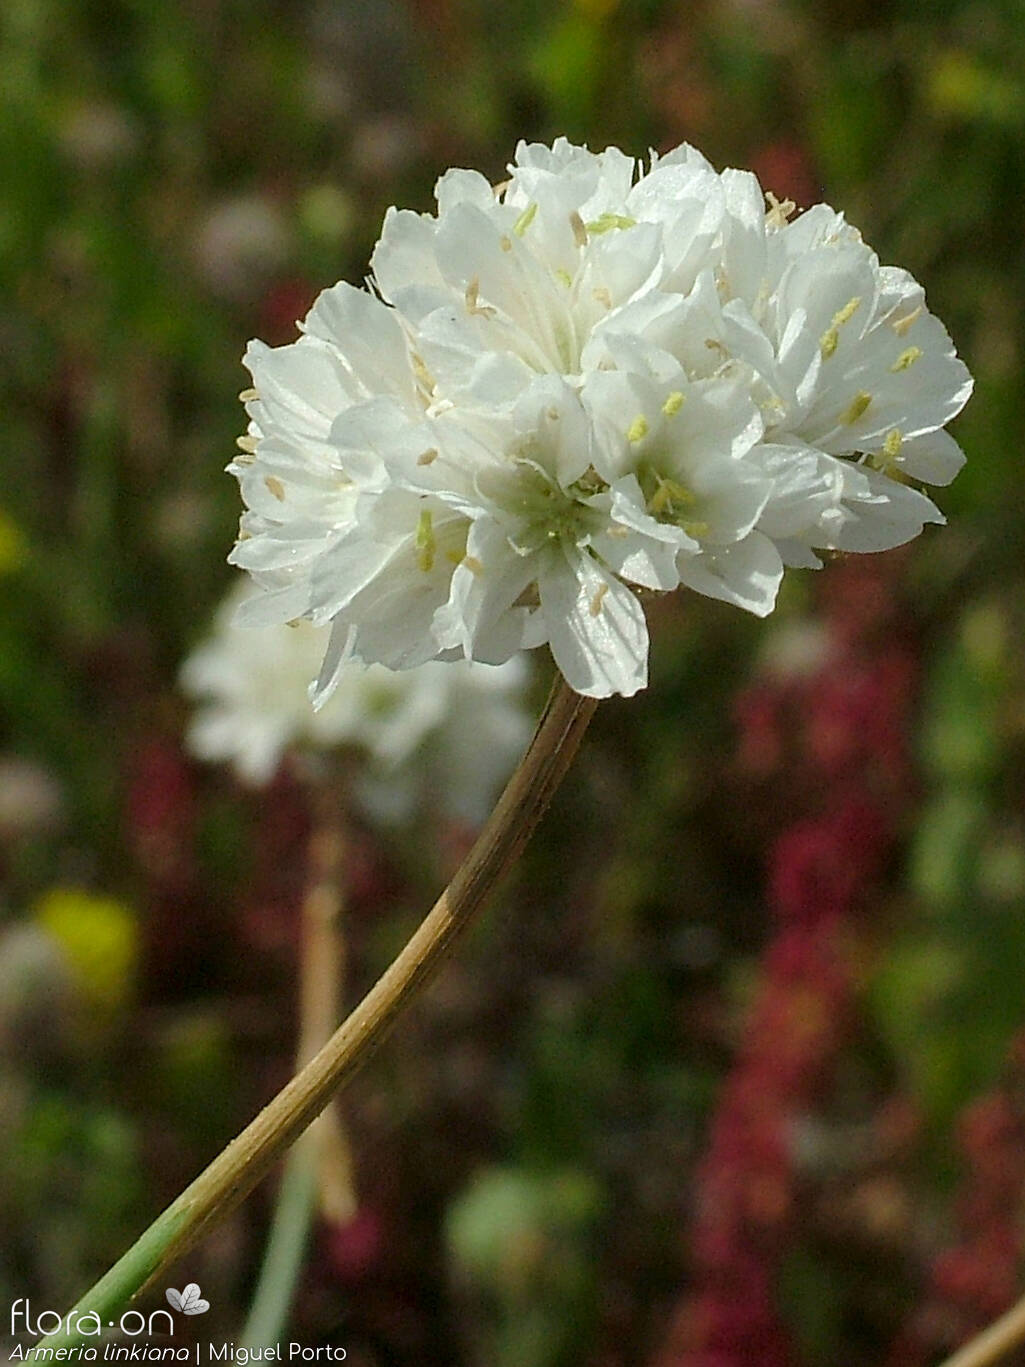 Armeria linkiana - Flor (close-up) | Miguel Porto; CC BY-NC 4.0